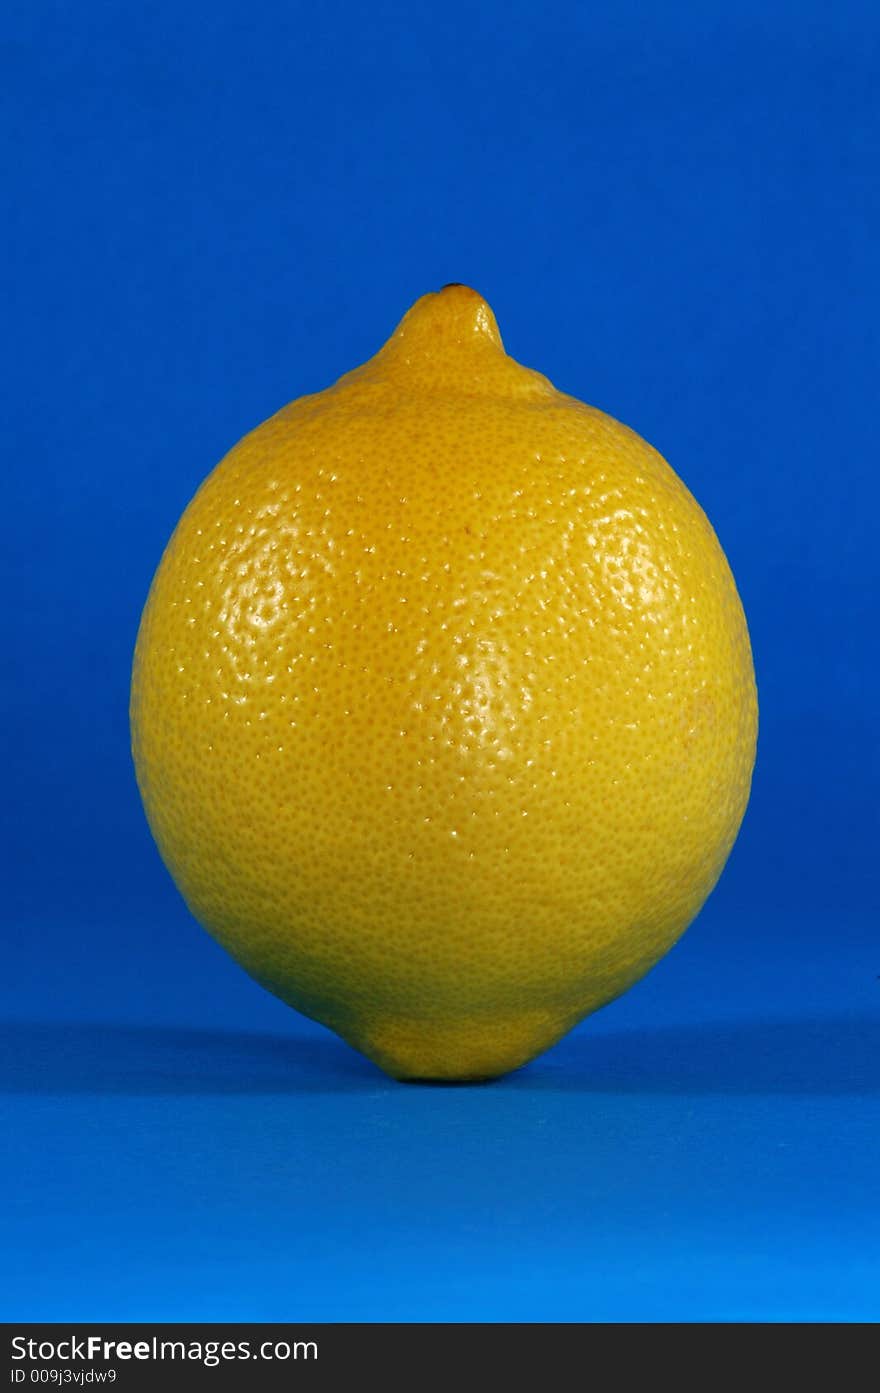 Whole Lemon Over Blue Background